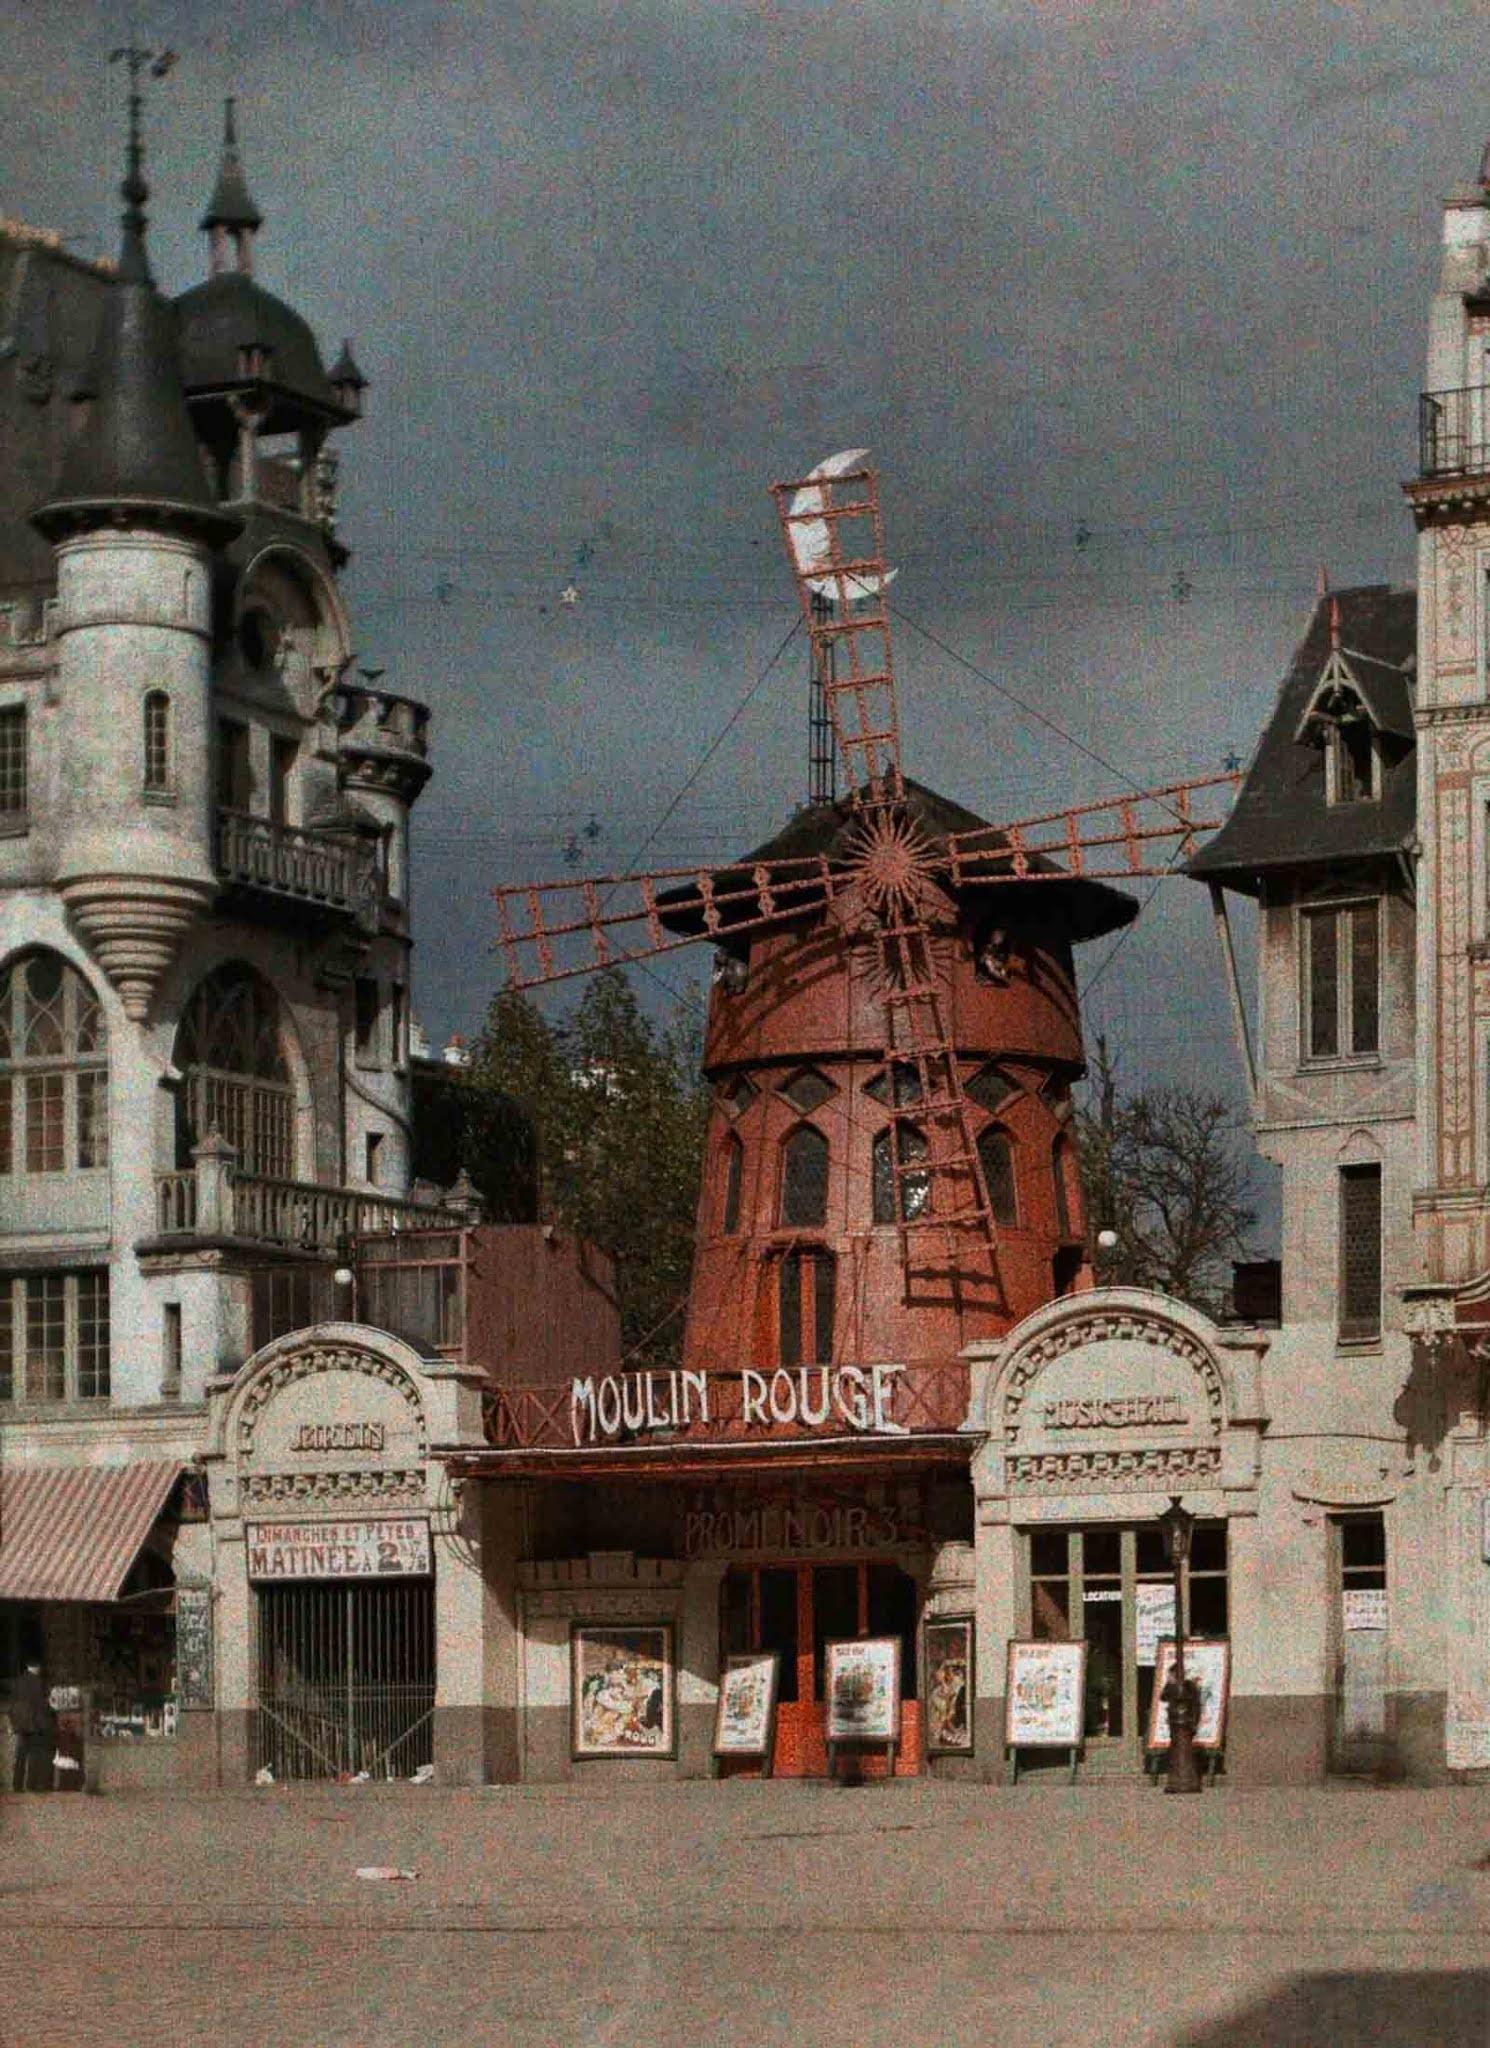 Paris en images aux couleurs vives par Jules Gervais-Courtellemont, 1923